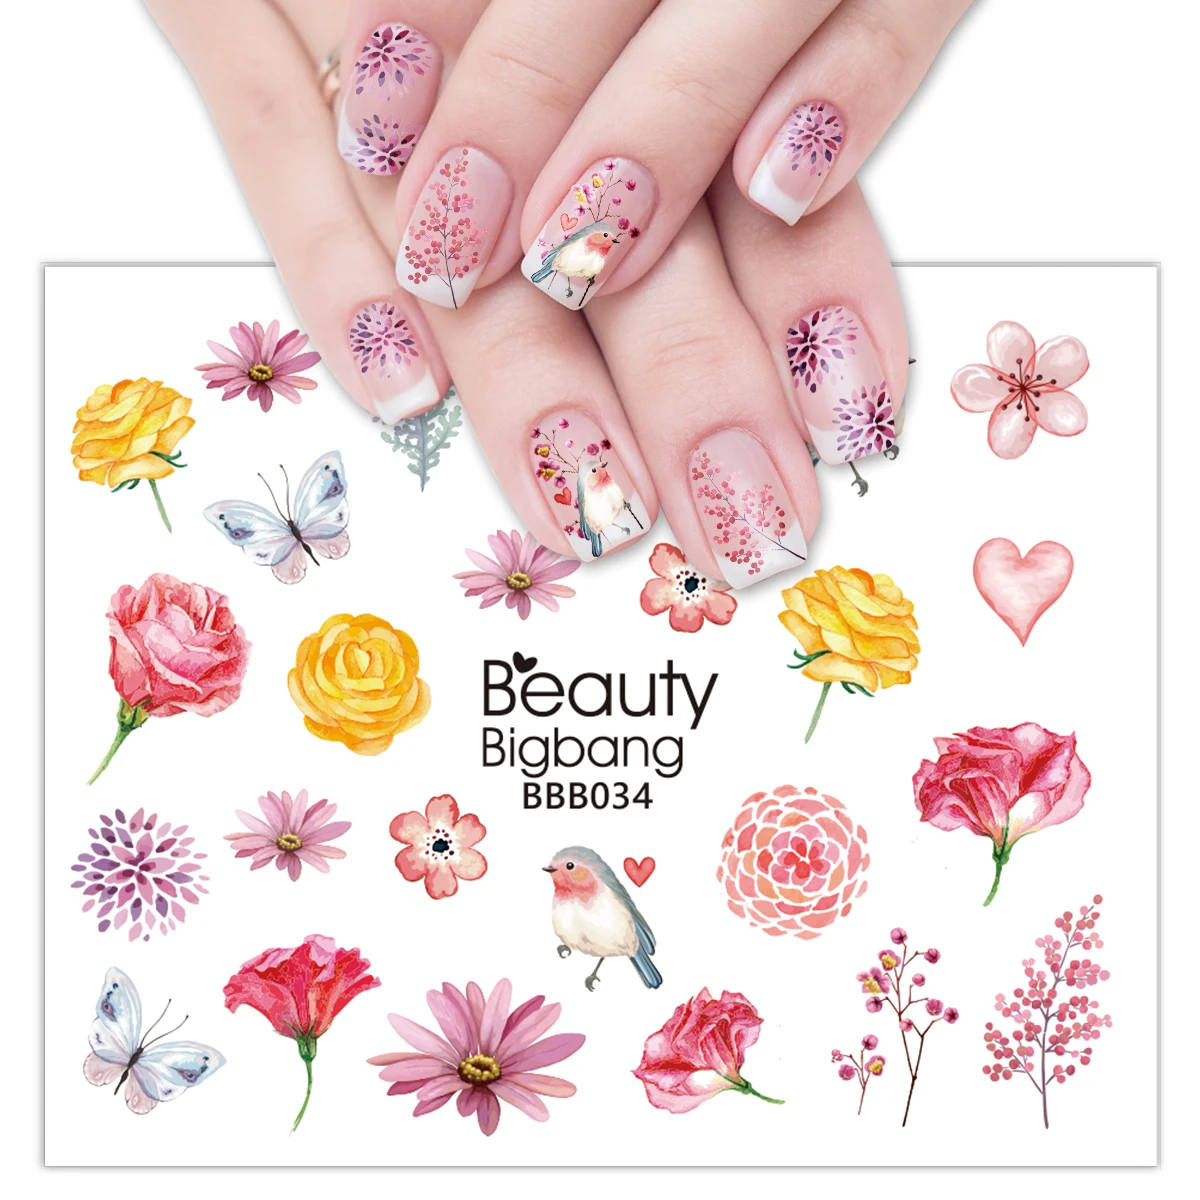 Beauty BIGBANG 1 шт. наклейка для ногтей пустыня тема кактус суккуленты узор красота украшения Дизайн DIY легко применять для ногтей